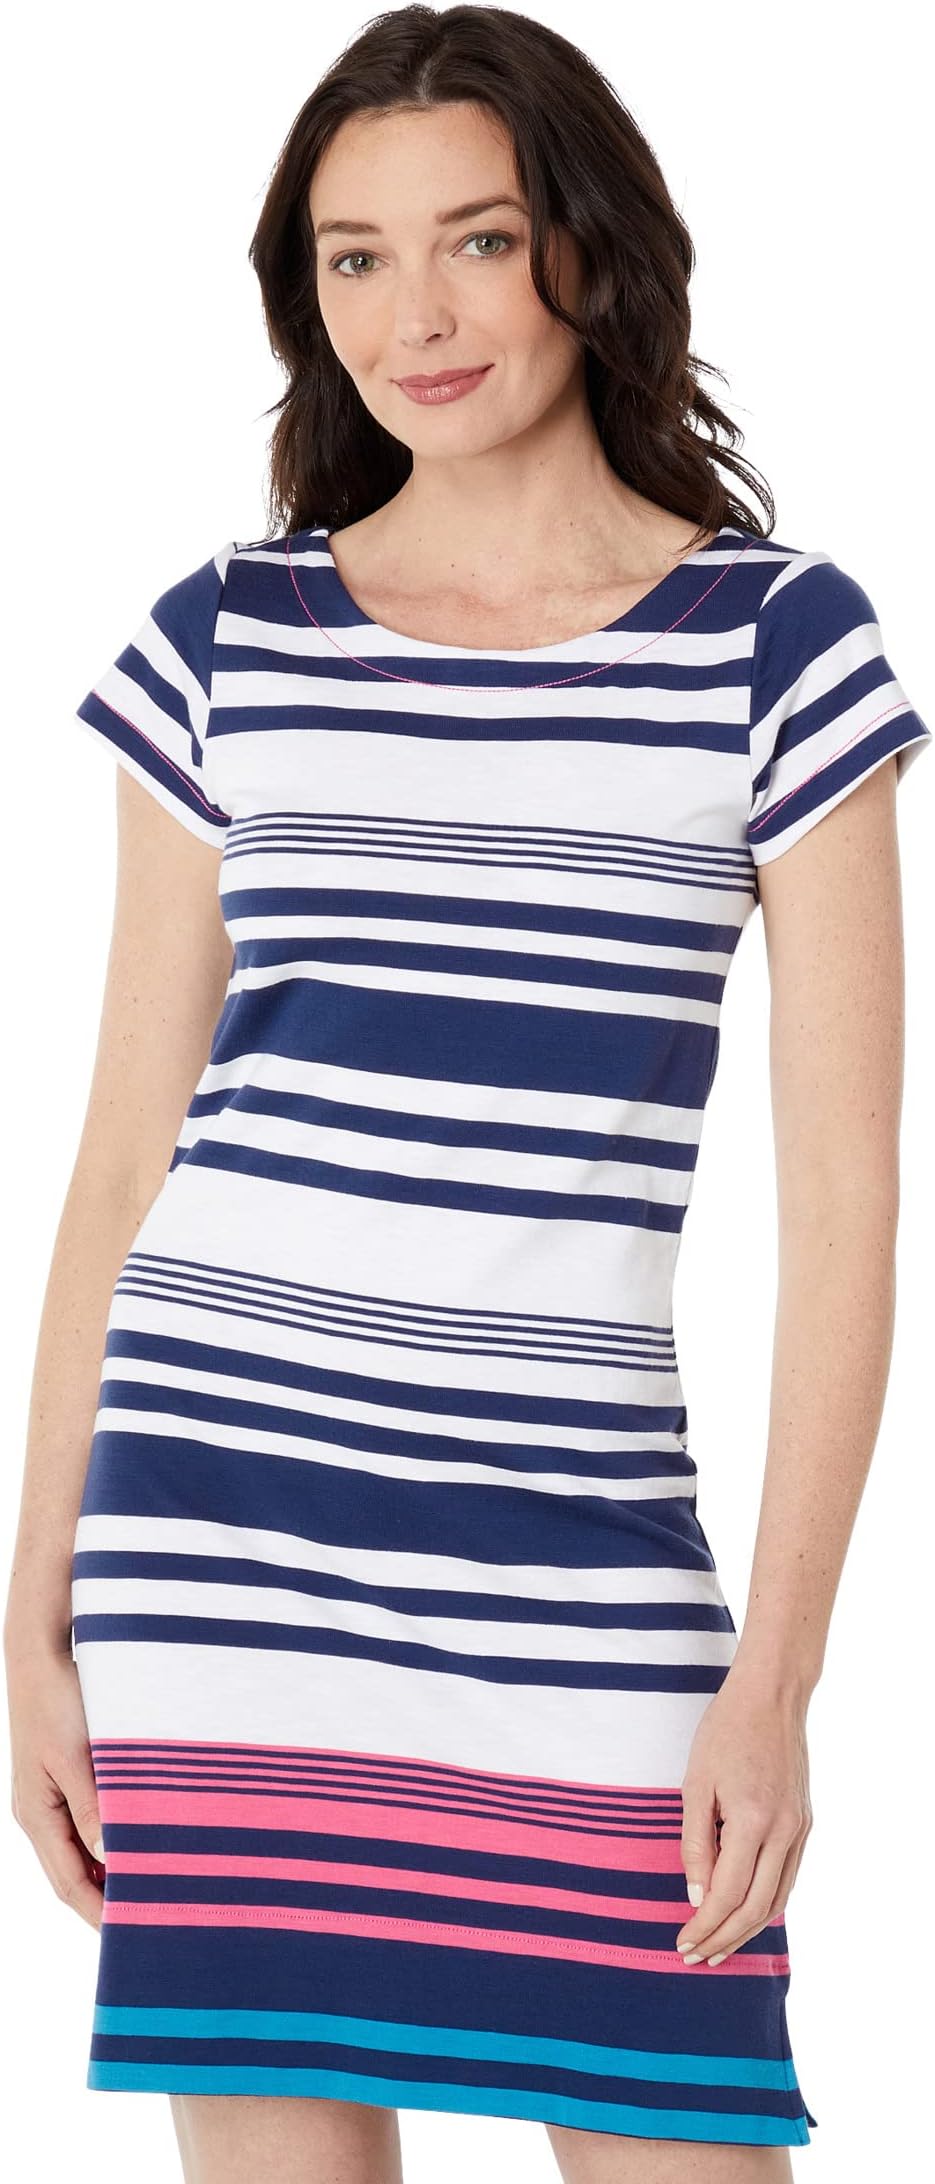 Платье Нелли - Береговые Полосы Hatley, цвет Shoreline Stripes